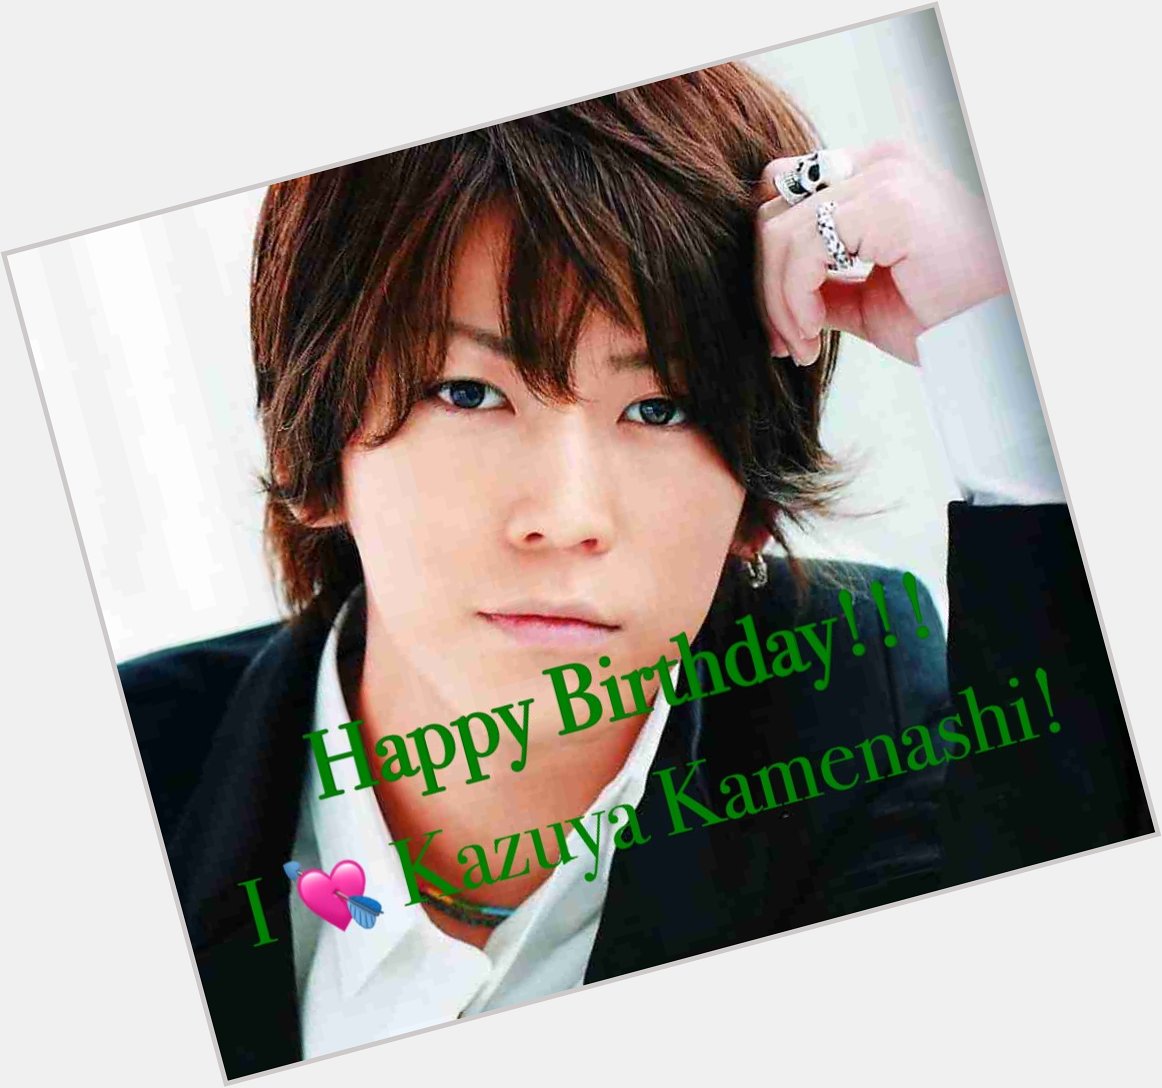        Happy Birthday! Kazuya Kamenashi   4  LIVE           